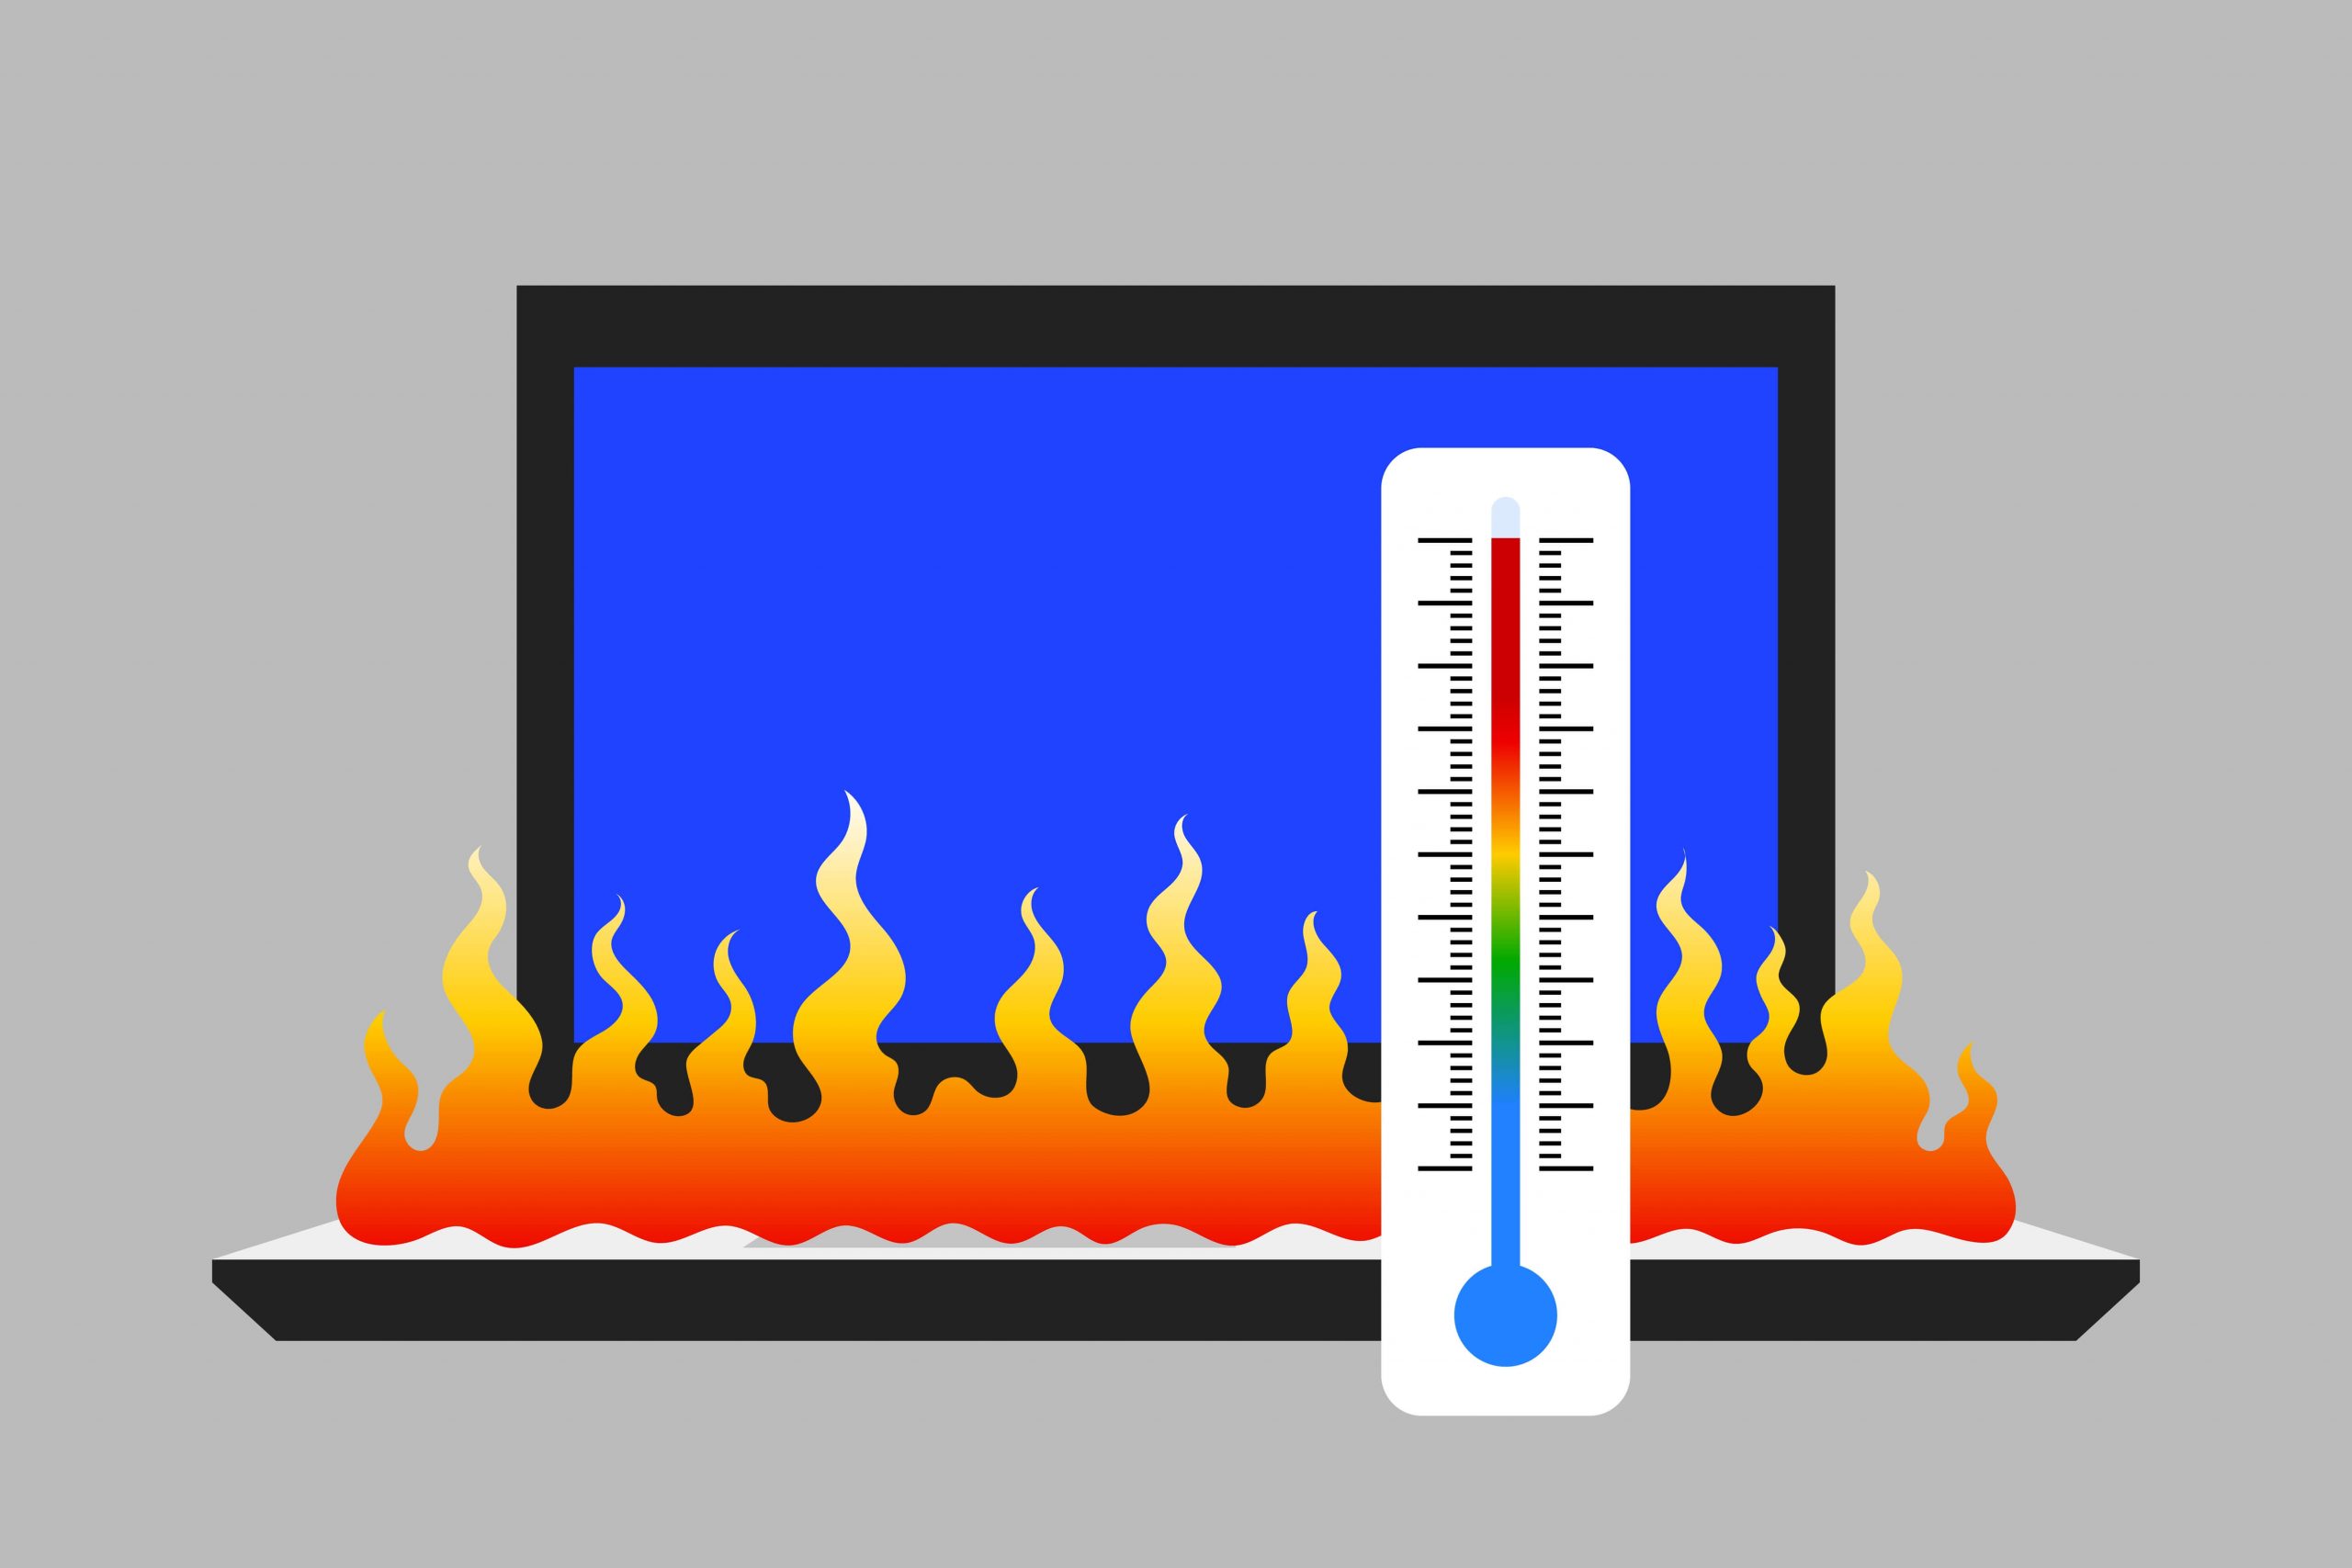 究極のガイド: ラップトップの過熱を防ぐ方法